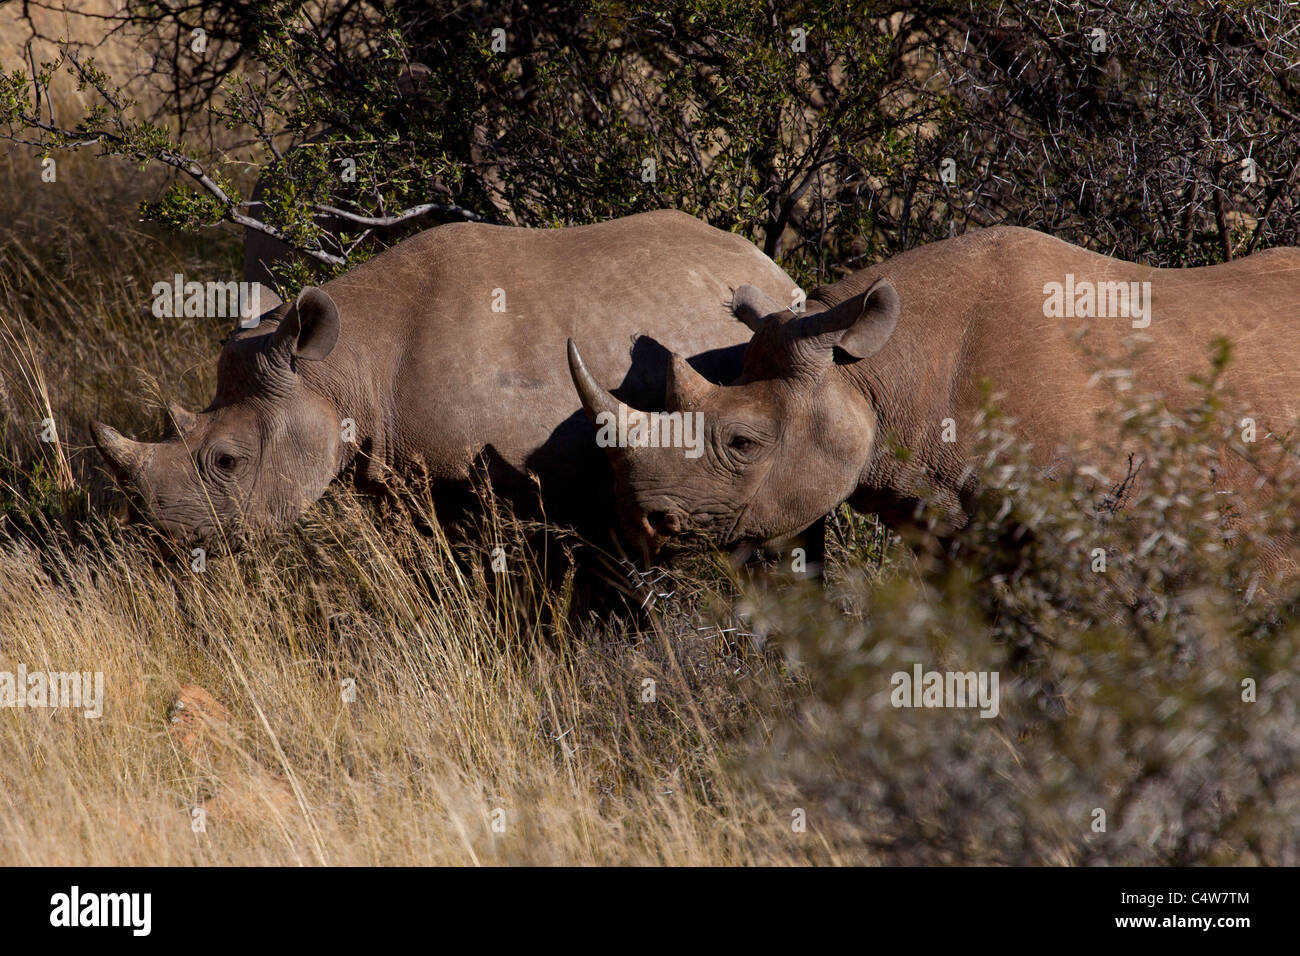 Black Rhinoceros (Diceros Bicornis) in Mountain Zebra National Park, South Africa Stock Photo